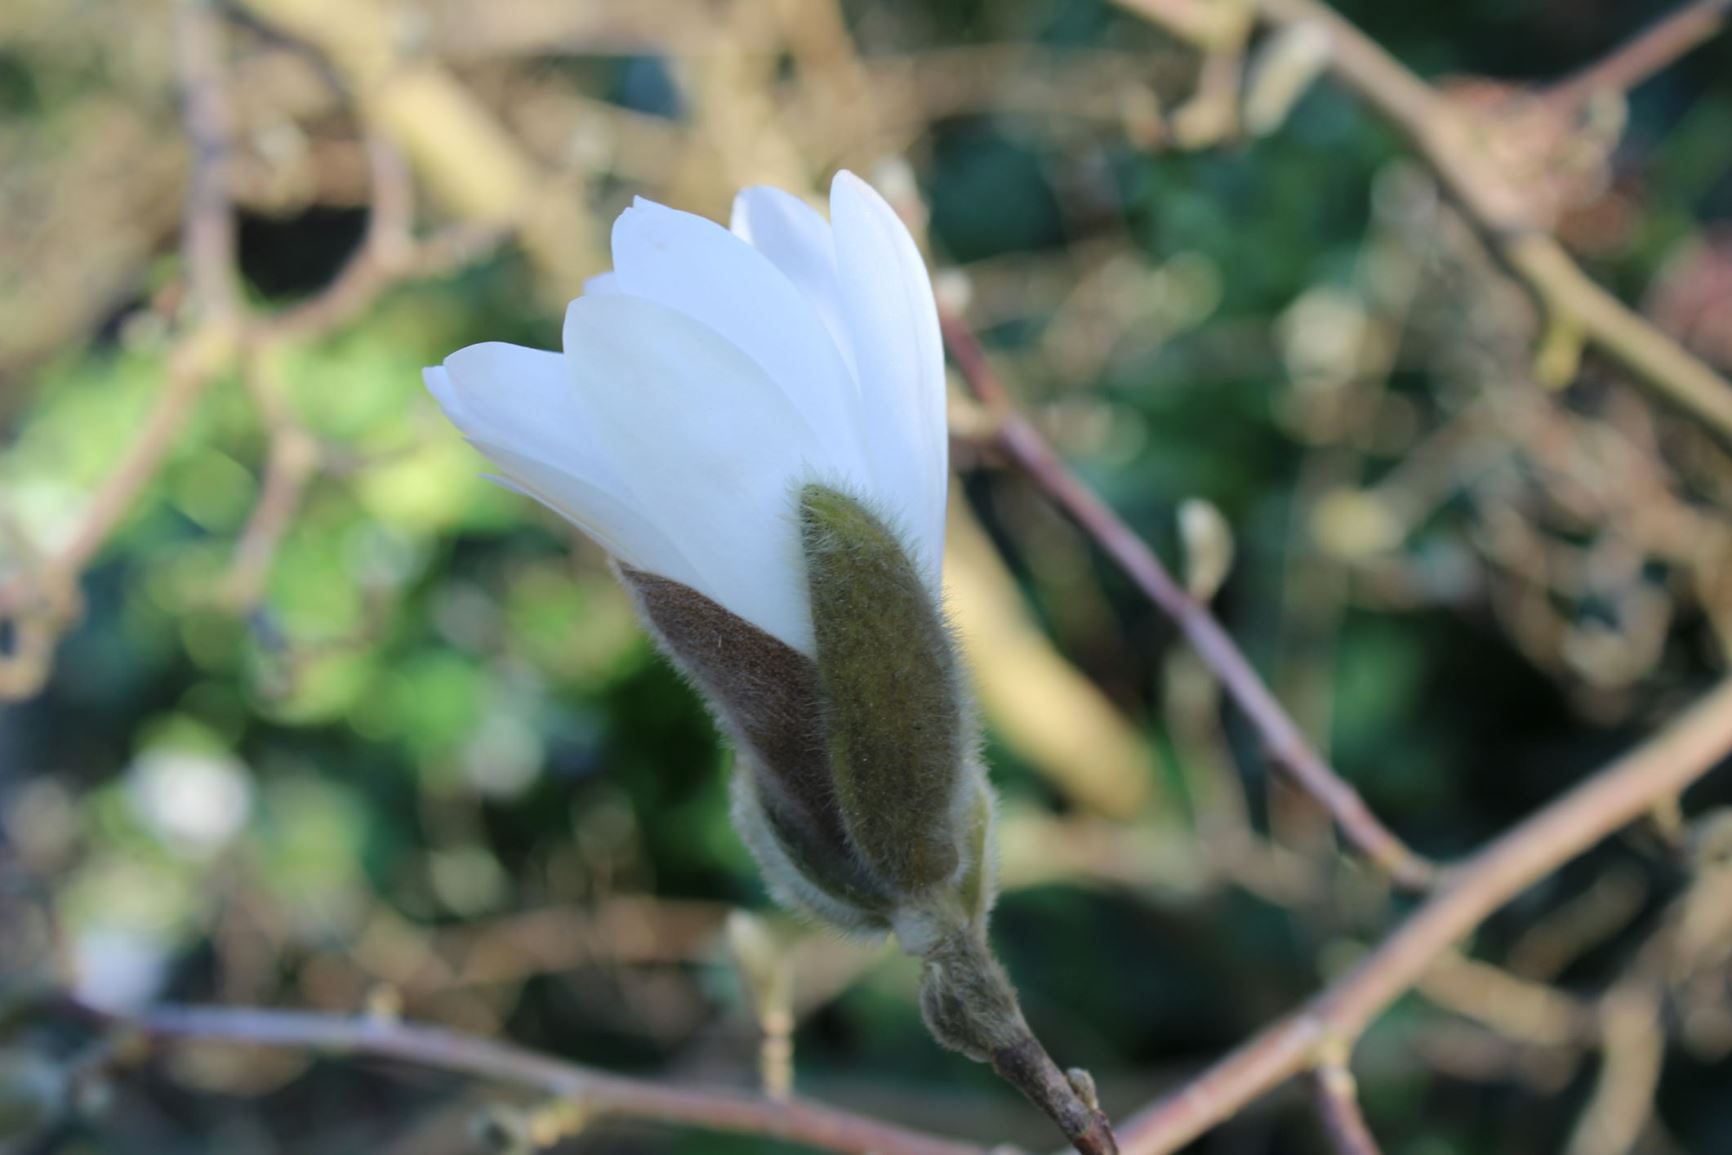 Magnolia stellata - Stermagnolia, Star magnolia